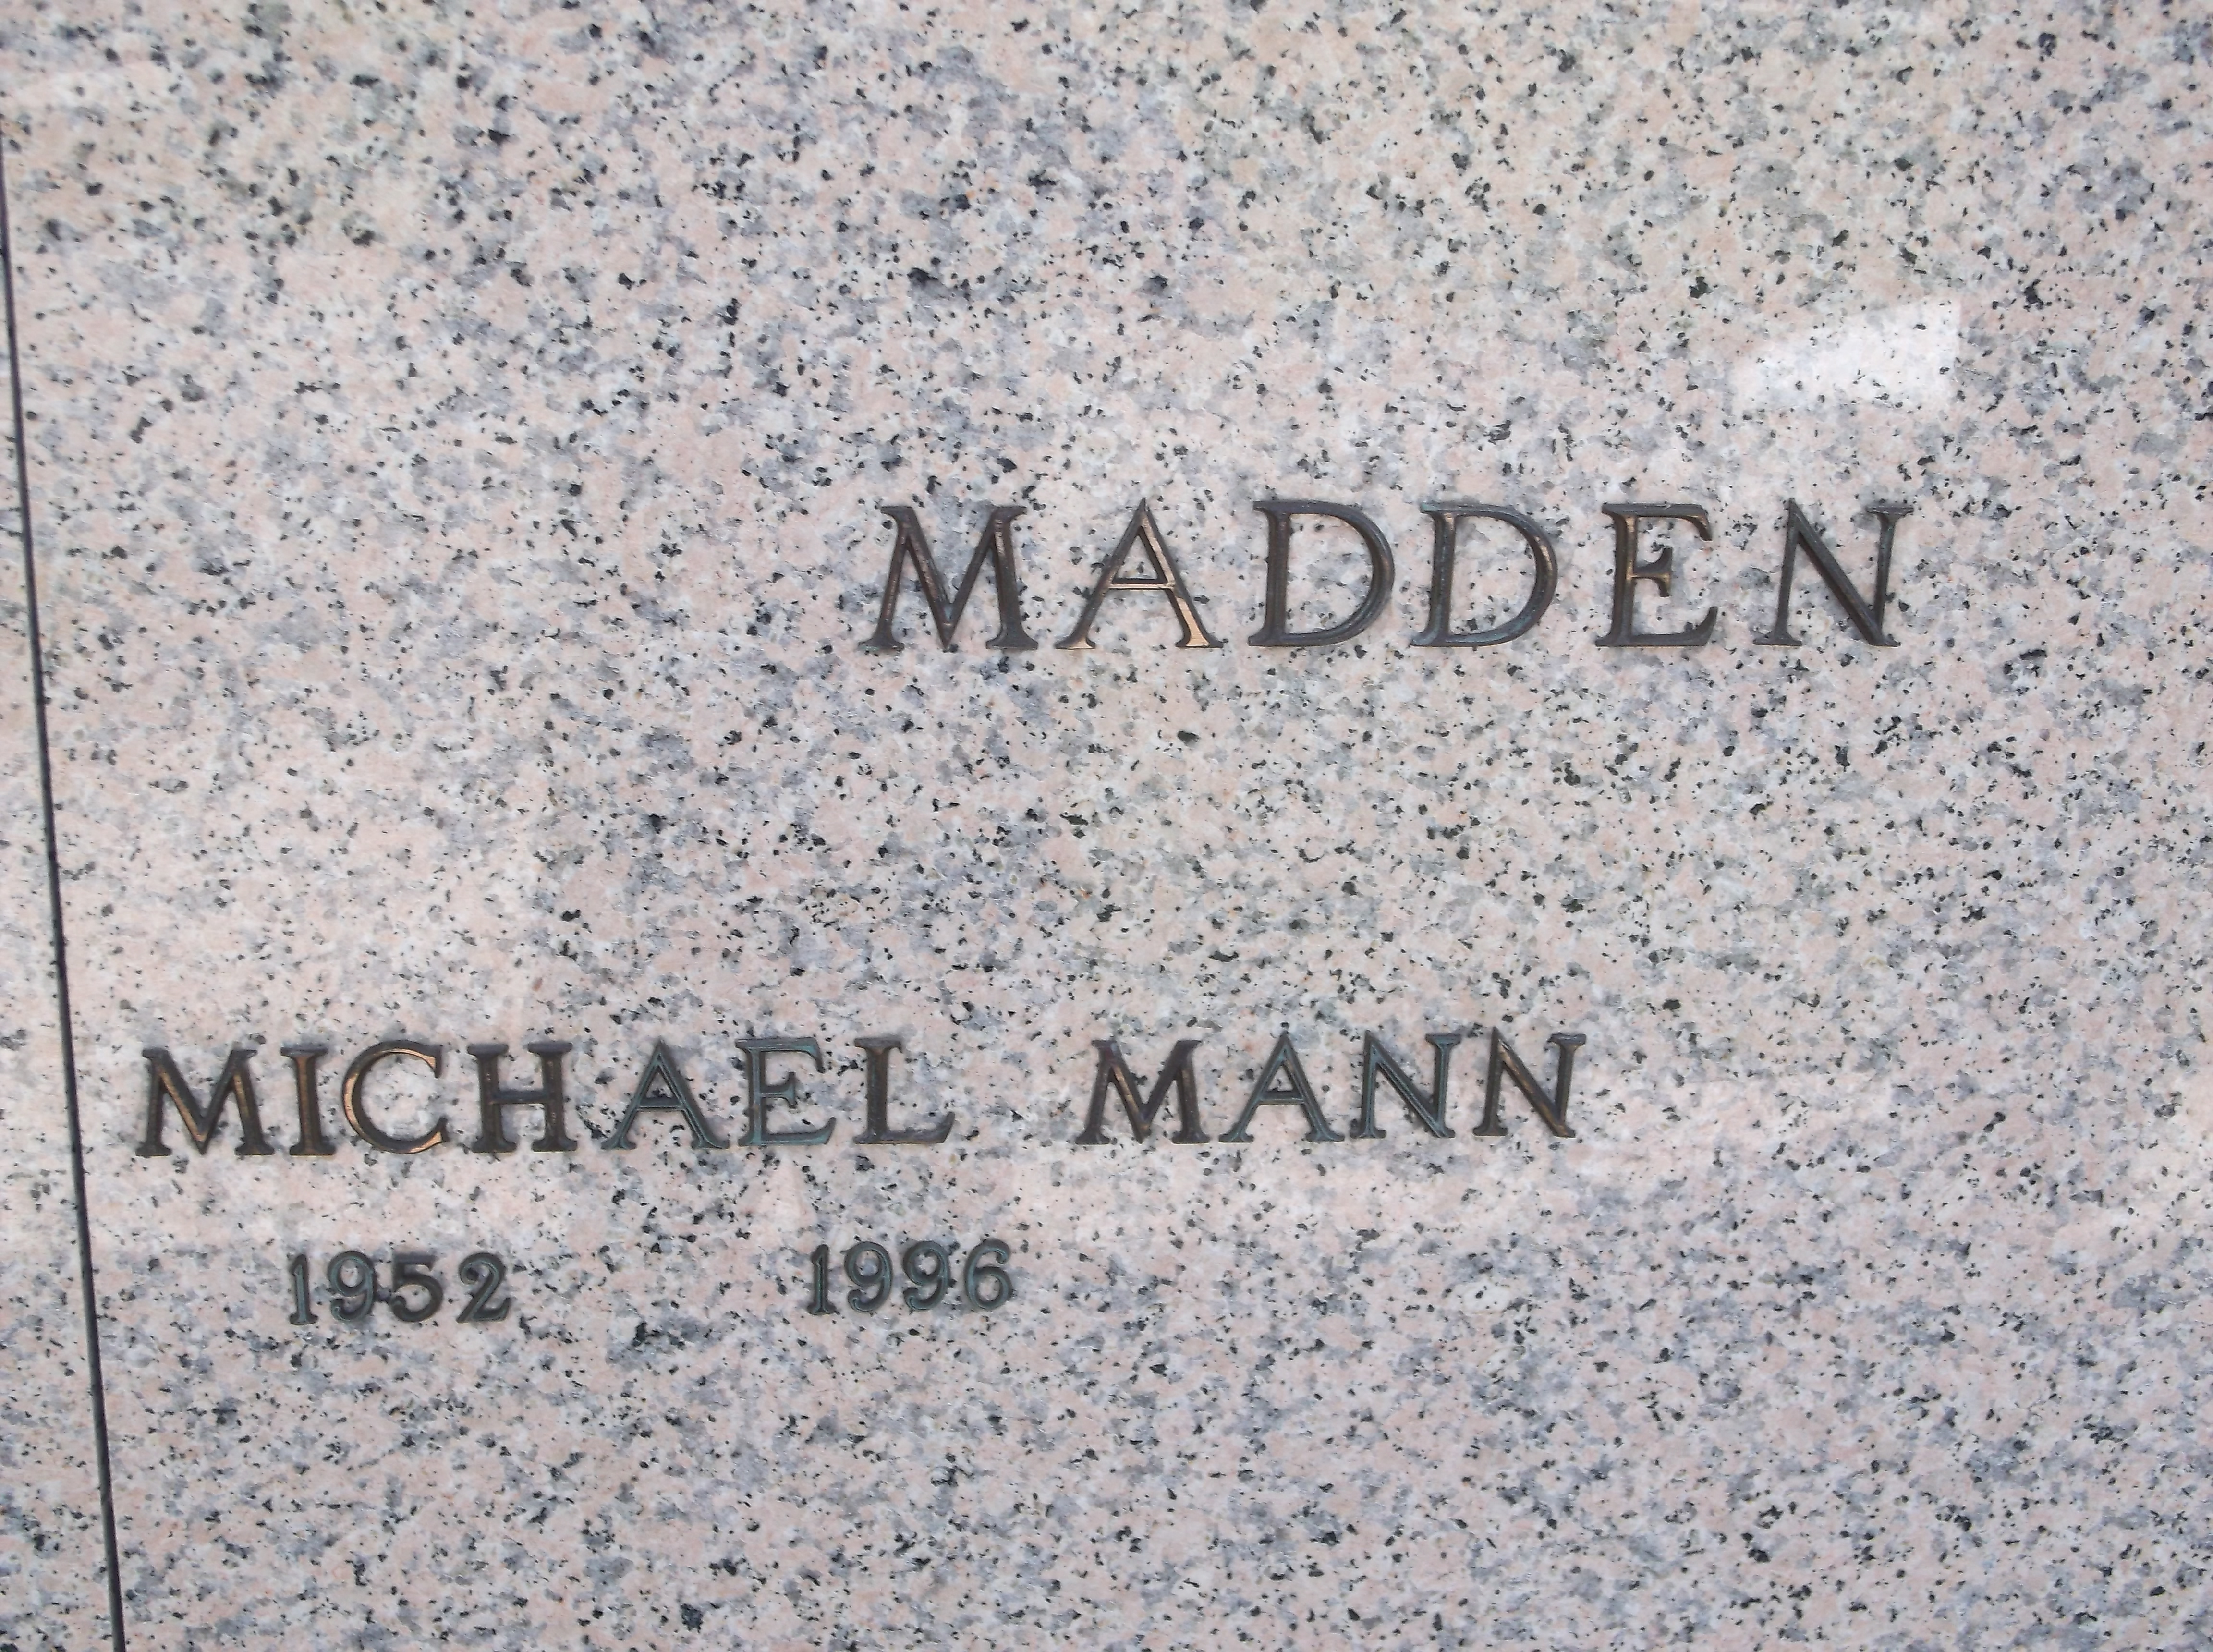 Michael Mann Madden